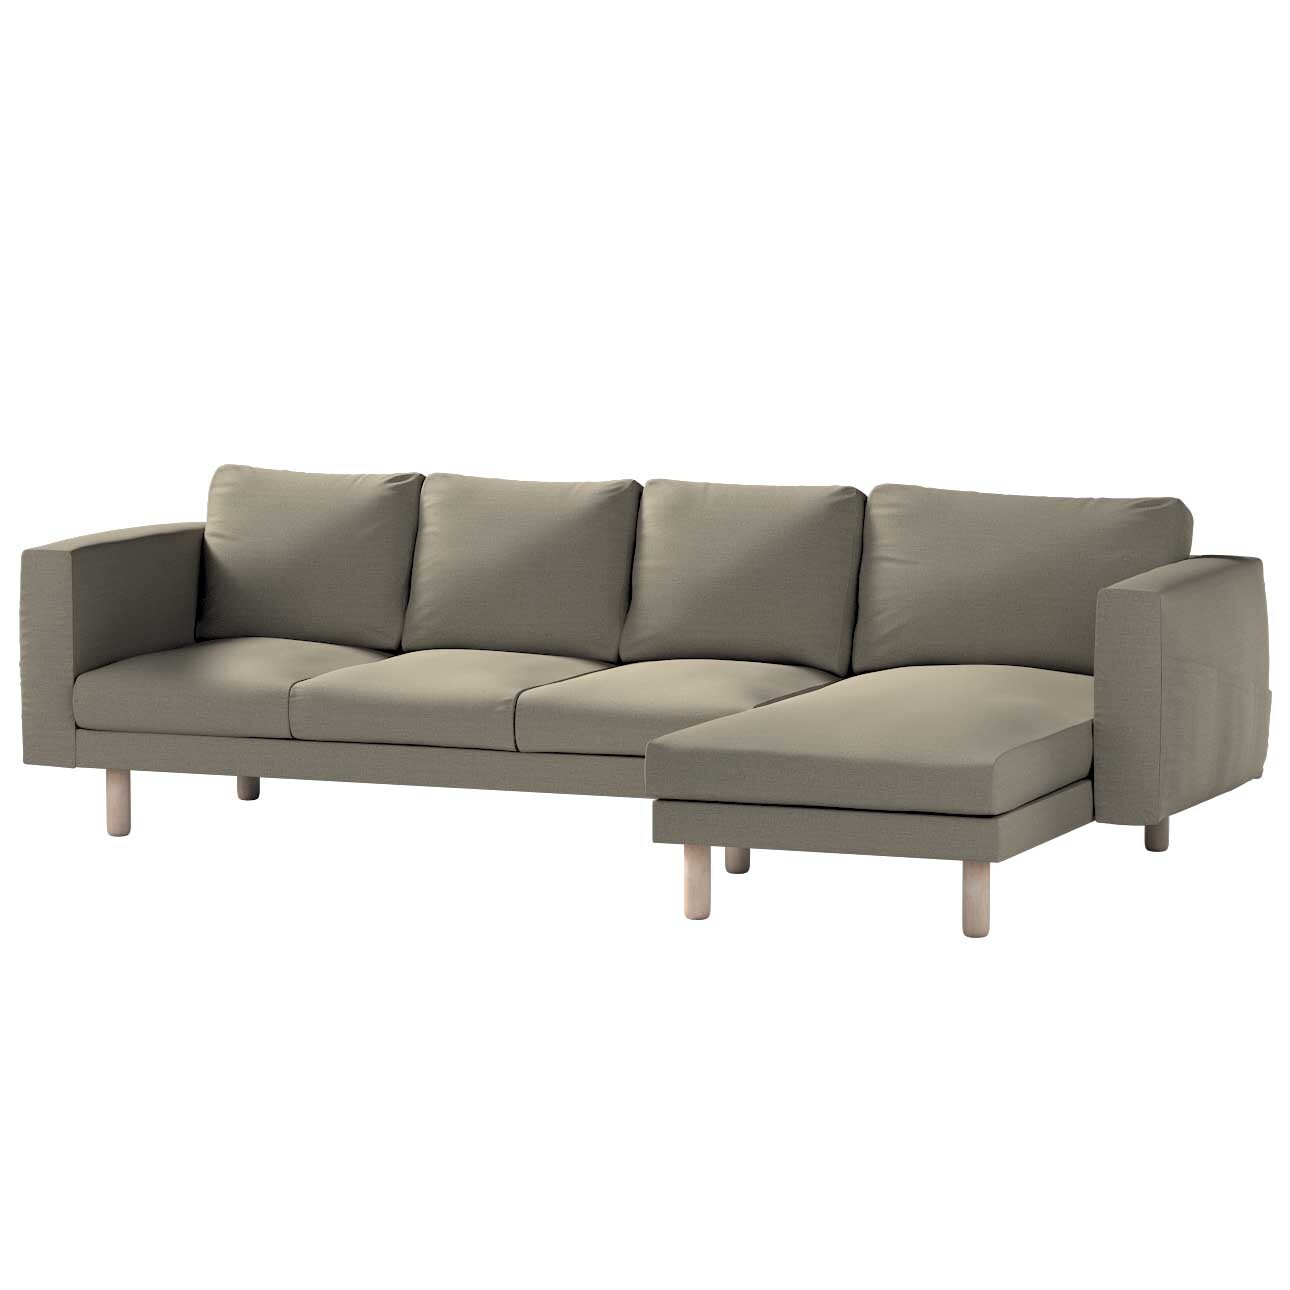 Bezug für Norsborg 4-Sitzer Sofa mit Recamiere, beige-grau, Norsborg Bezug günstig online kaufen